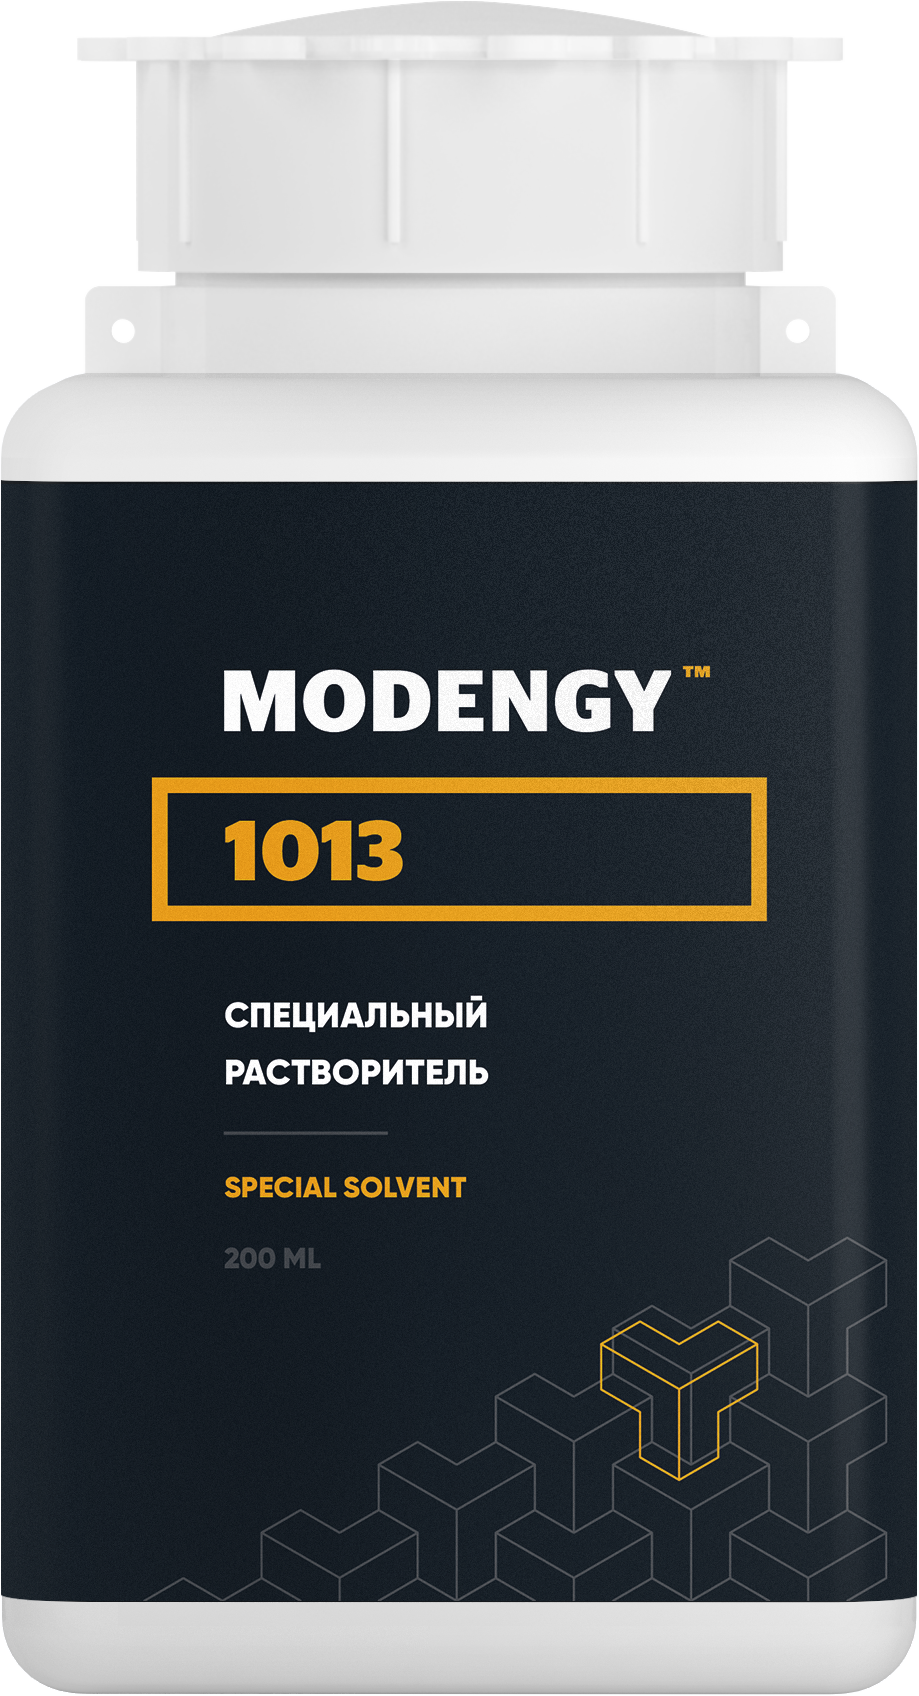 Специальный растворитель MODENGY 1013 (200 мл) специальный очиститель активатор modengy 200 мл